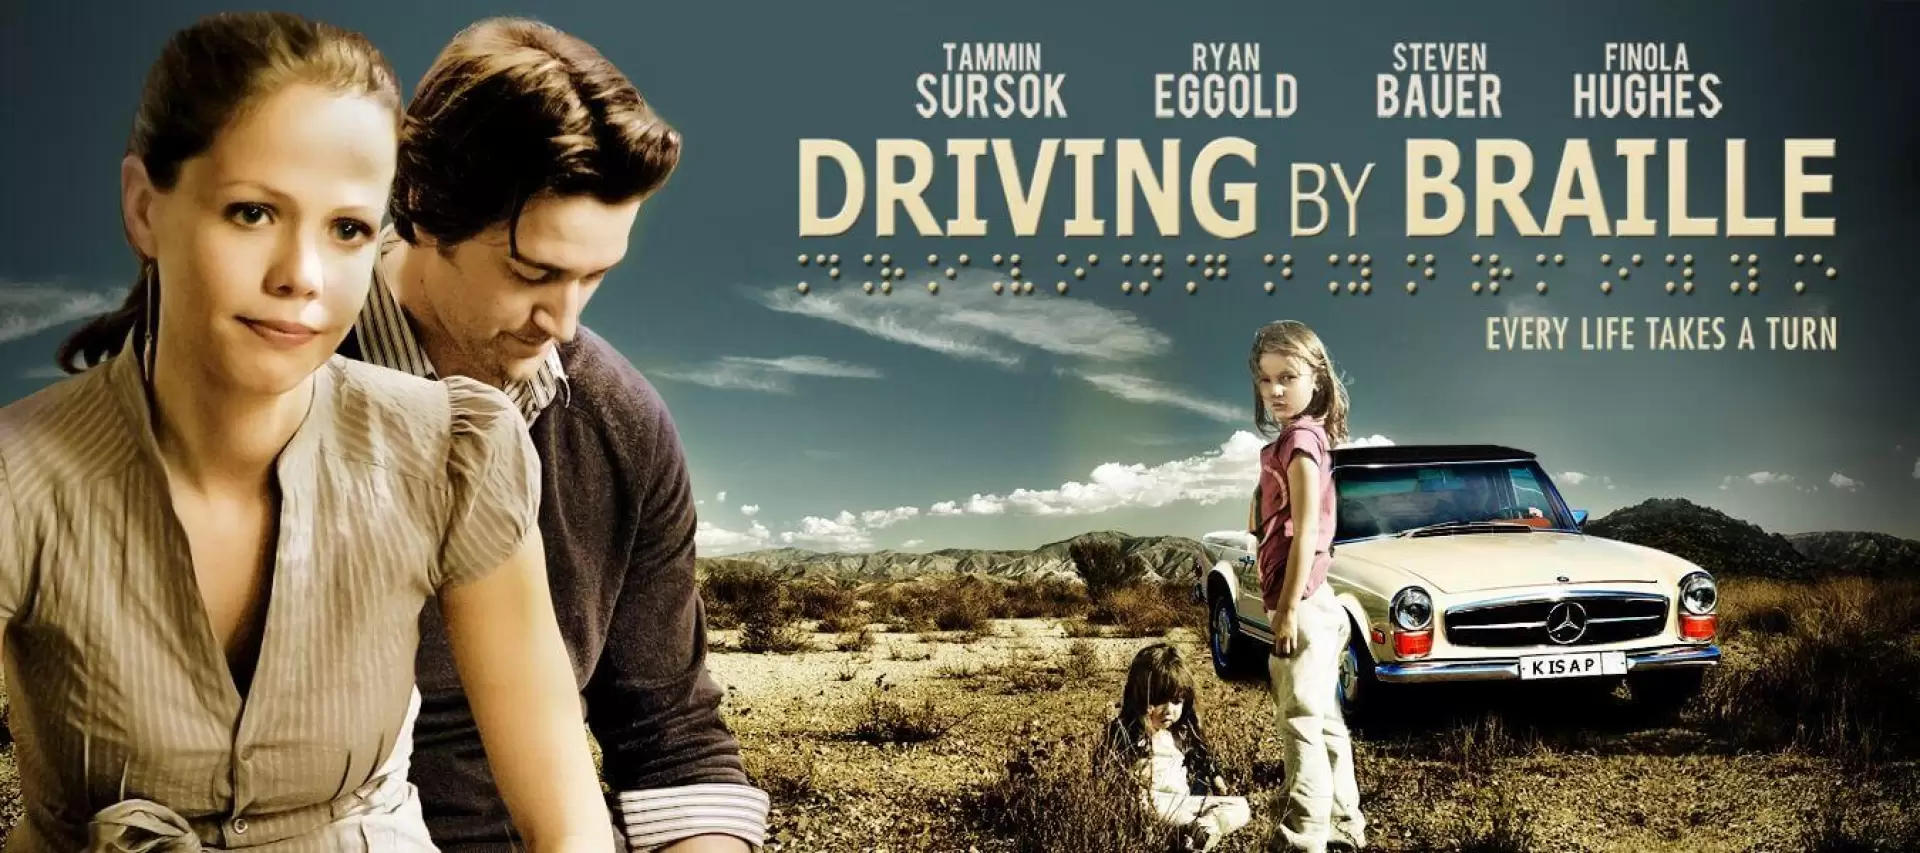 دانلود فیلم Driving by Braille 2011 (رانندگی با خط بریل)